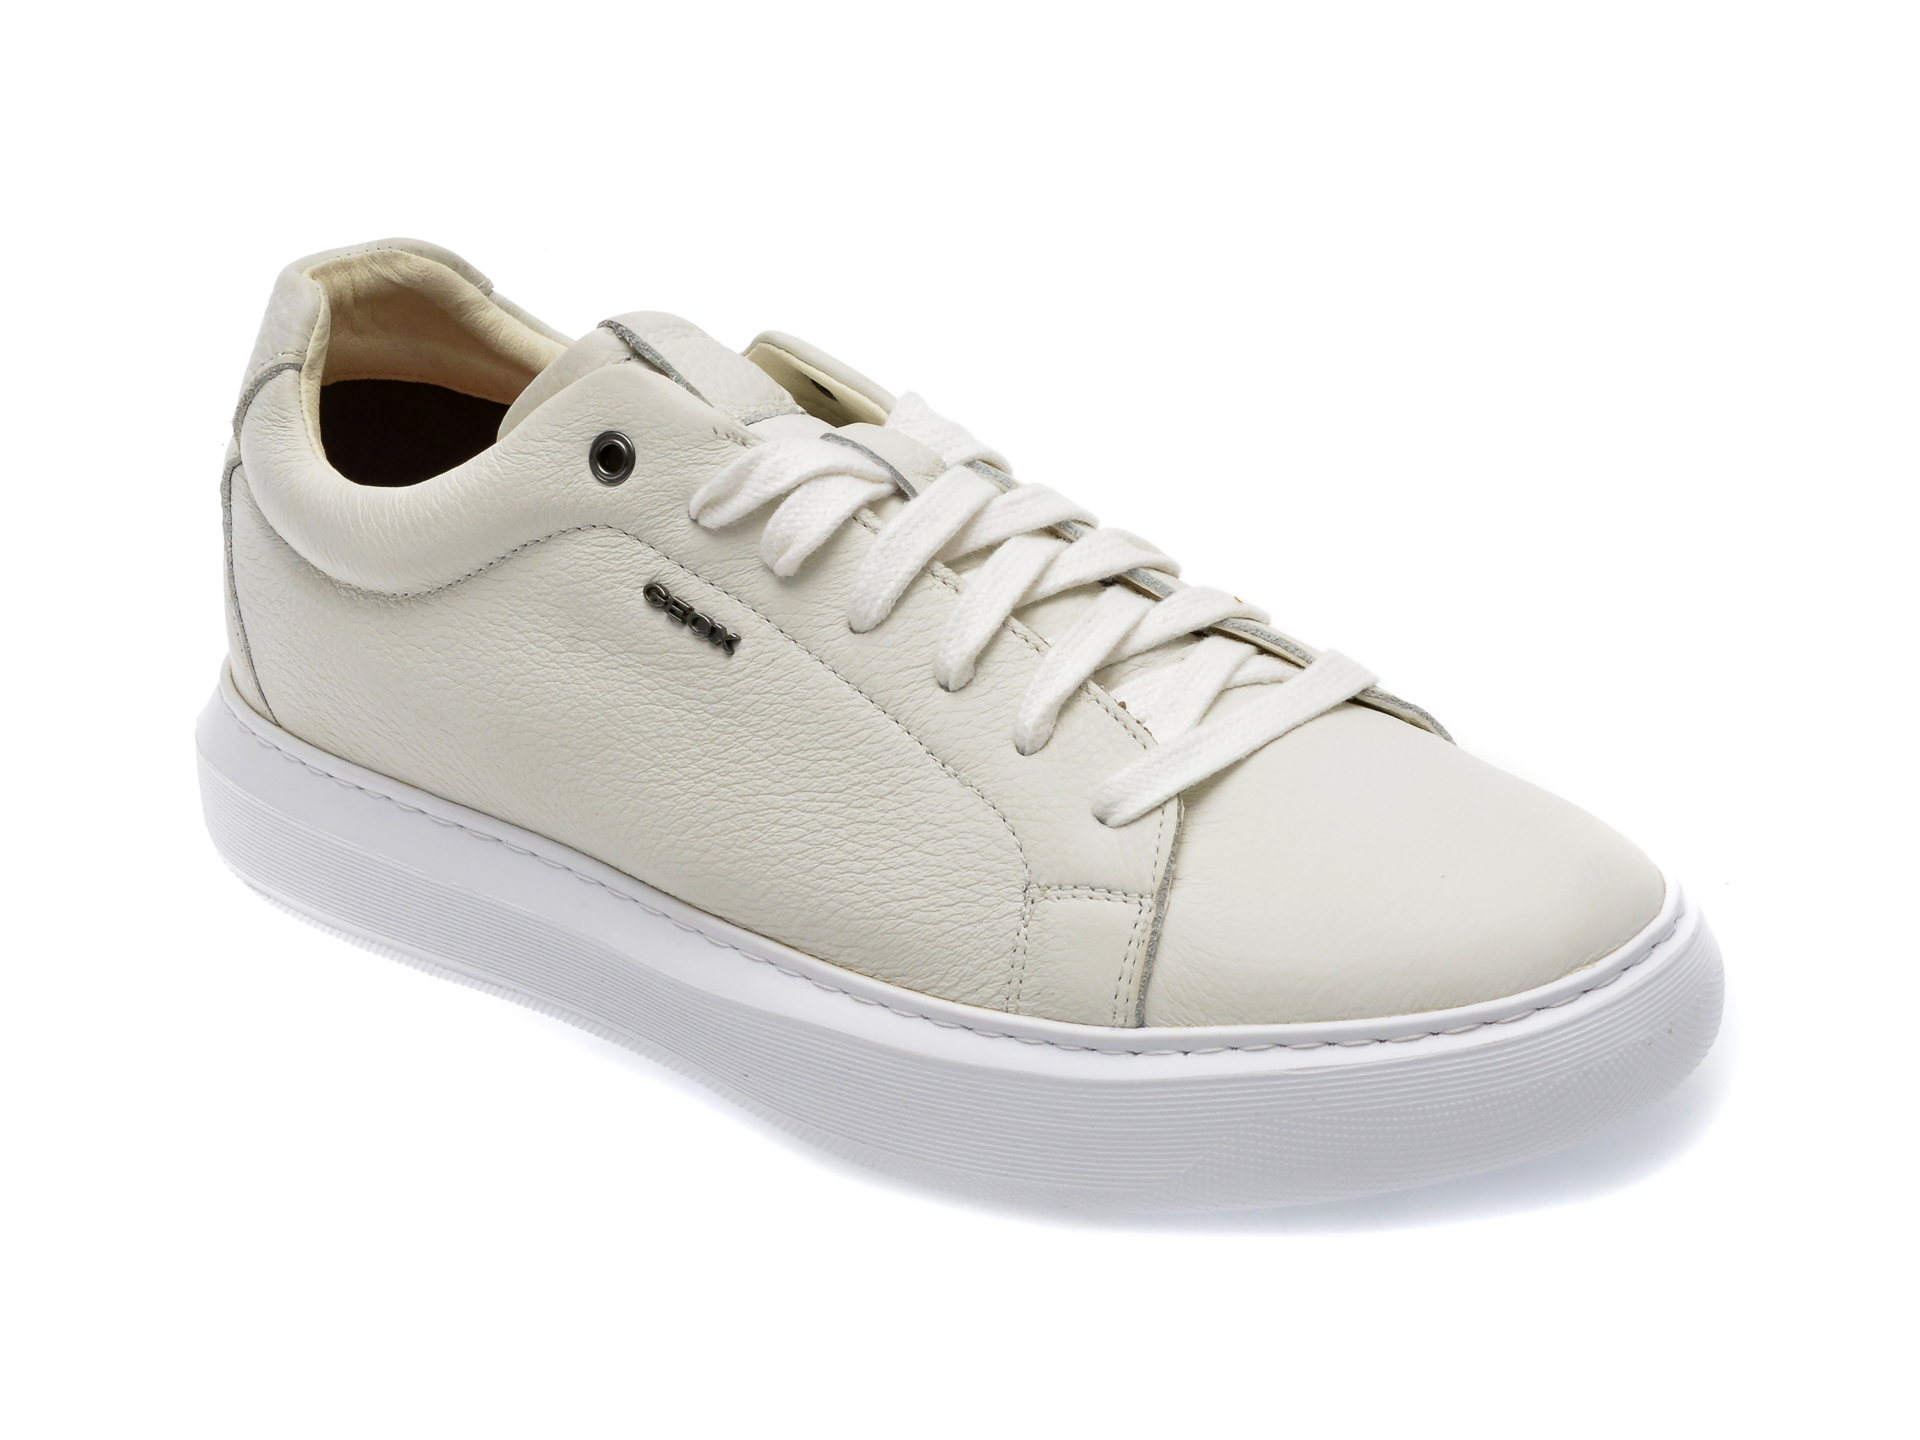 Pantofi casual GEOX albi, U845WB, din piele naturala